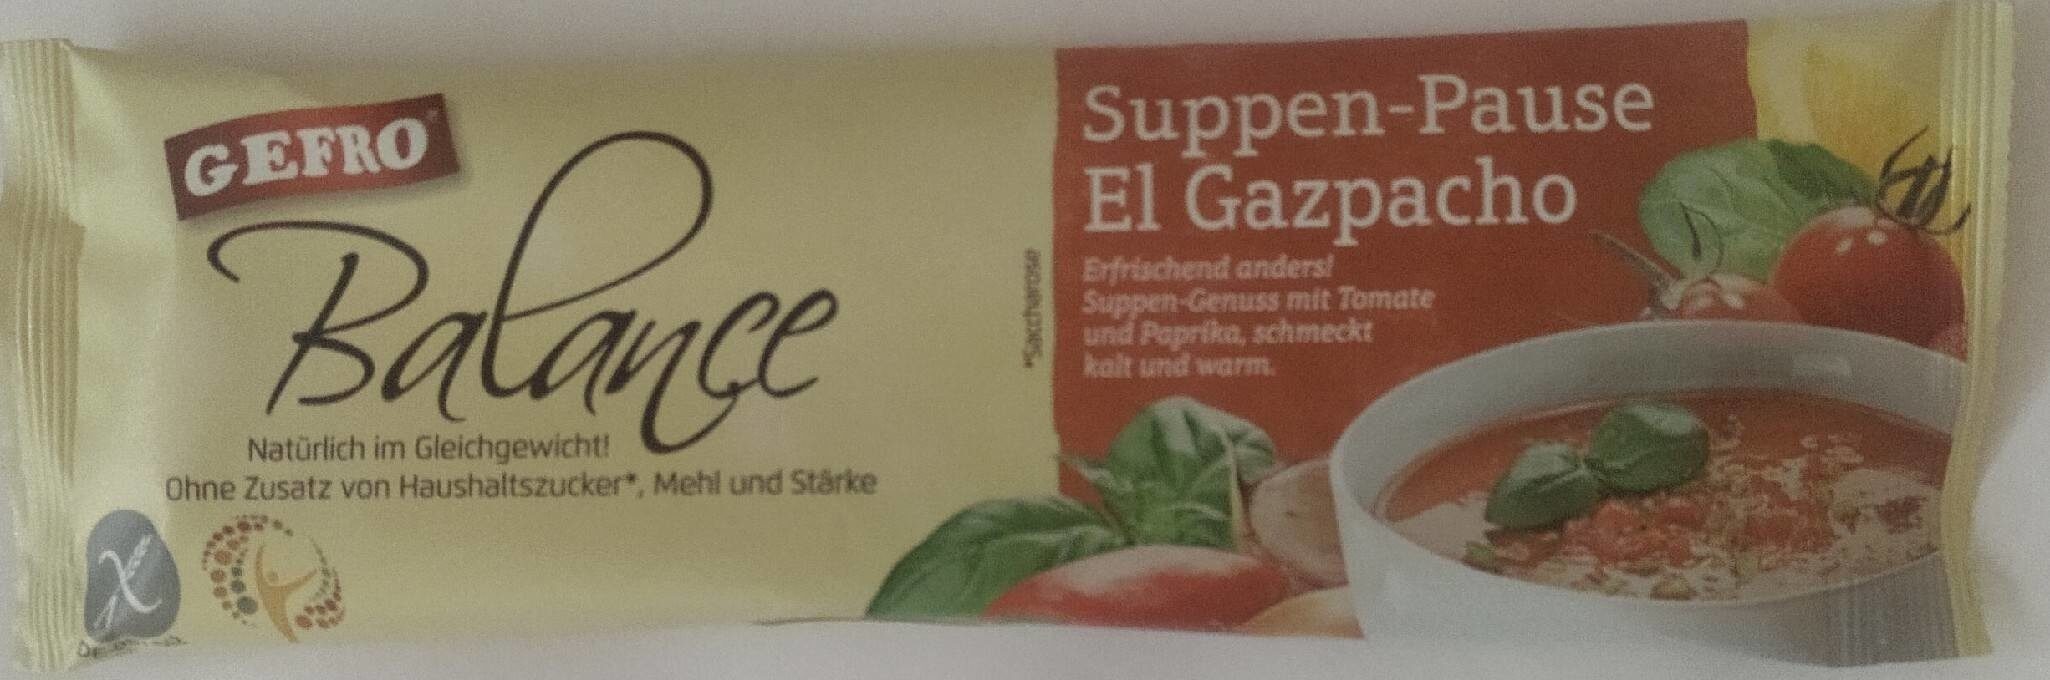 Suppen-Pause El Gazpacho - Produkt - de